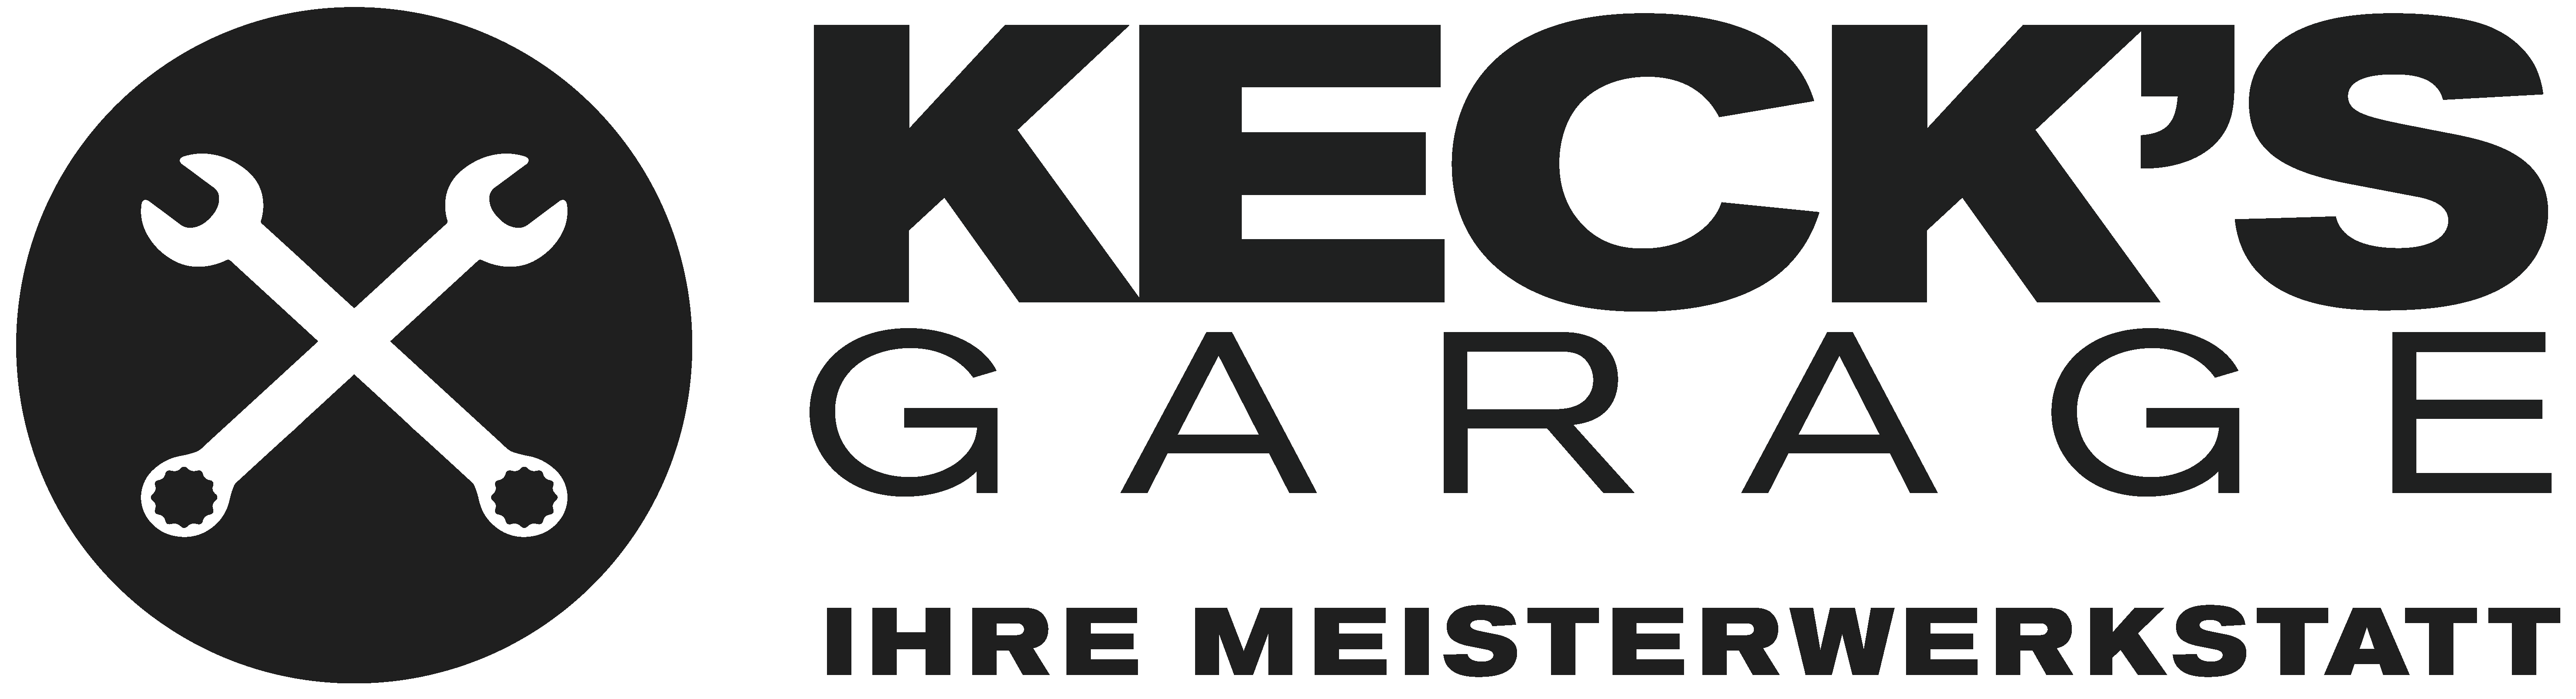 Keck's Garage in Karlsruhe